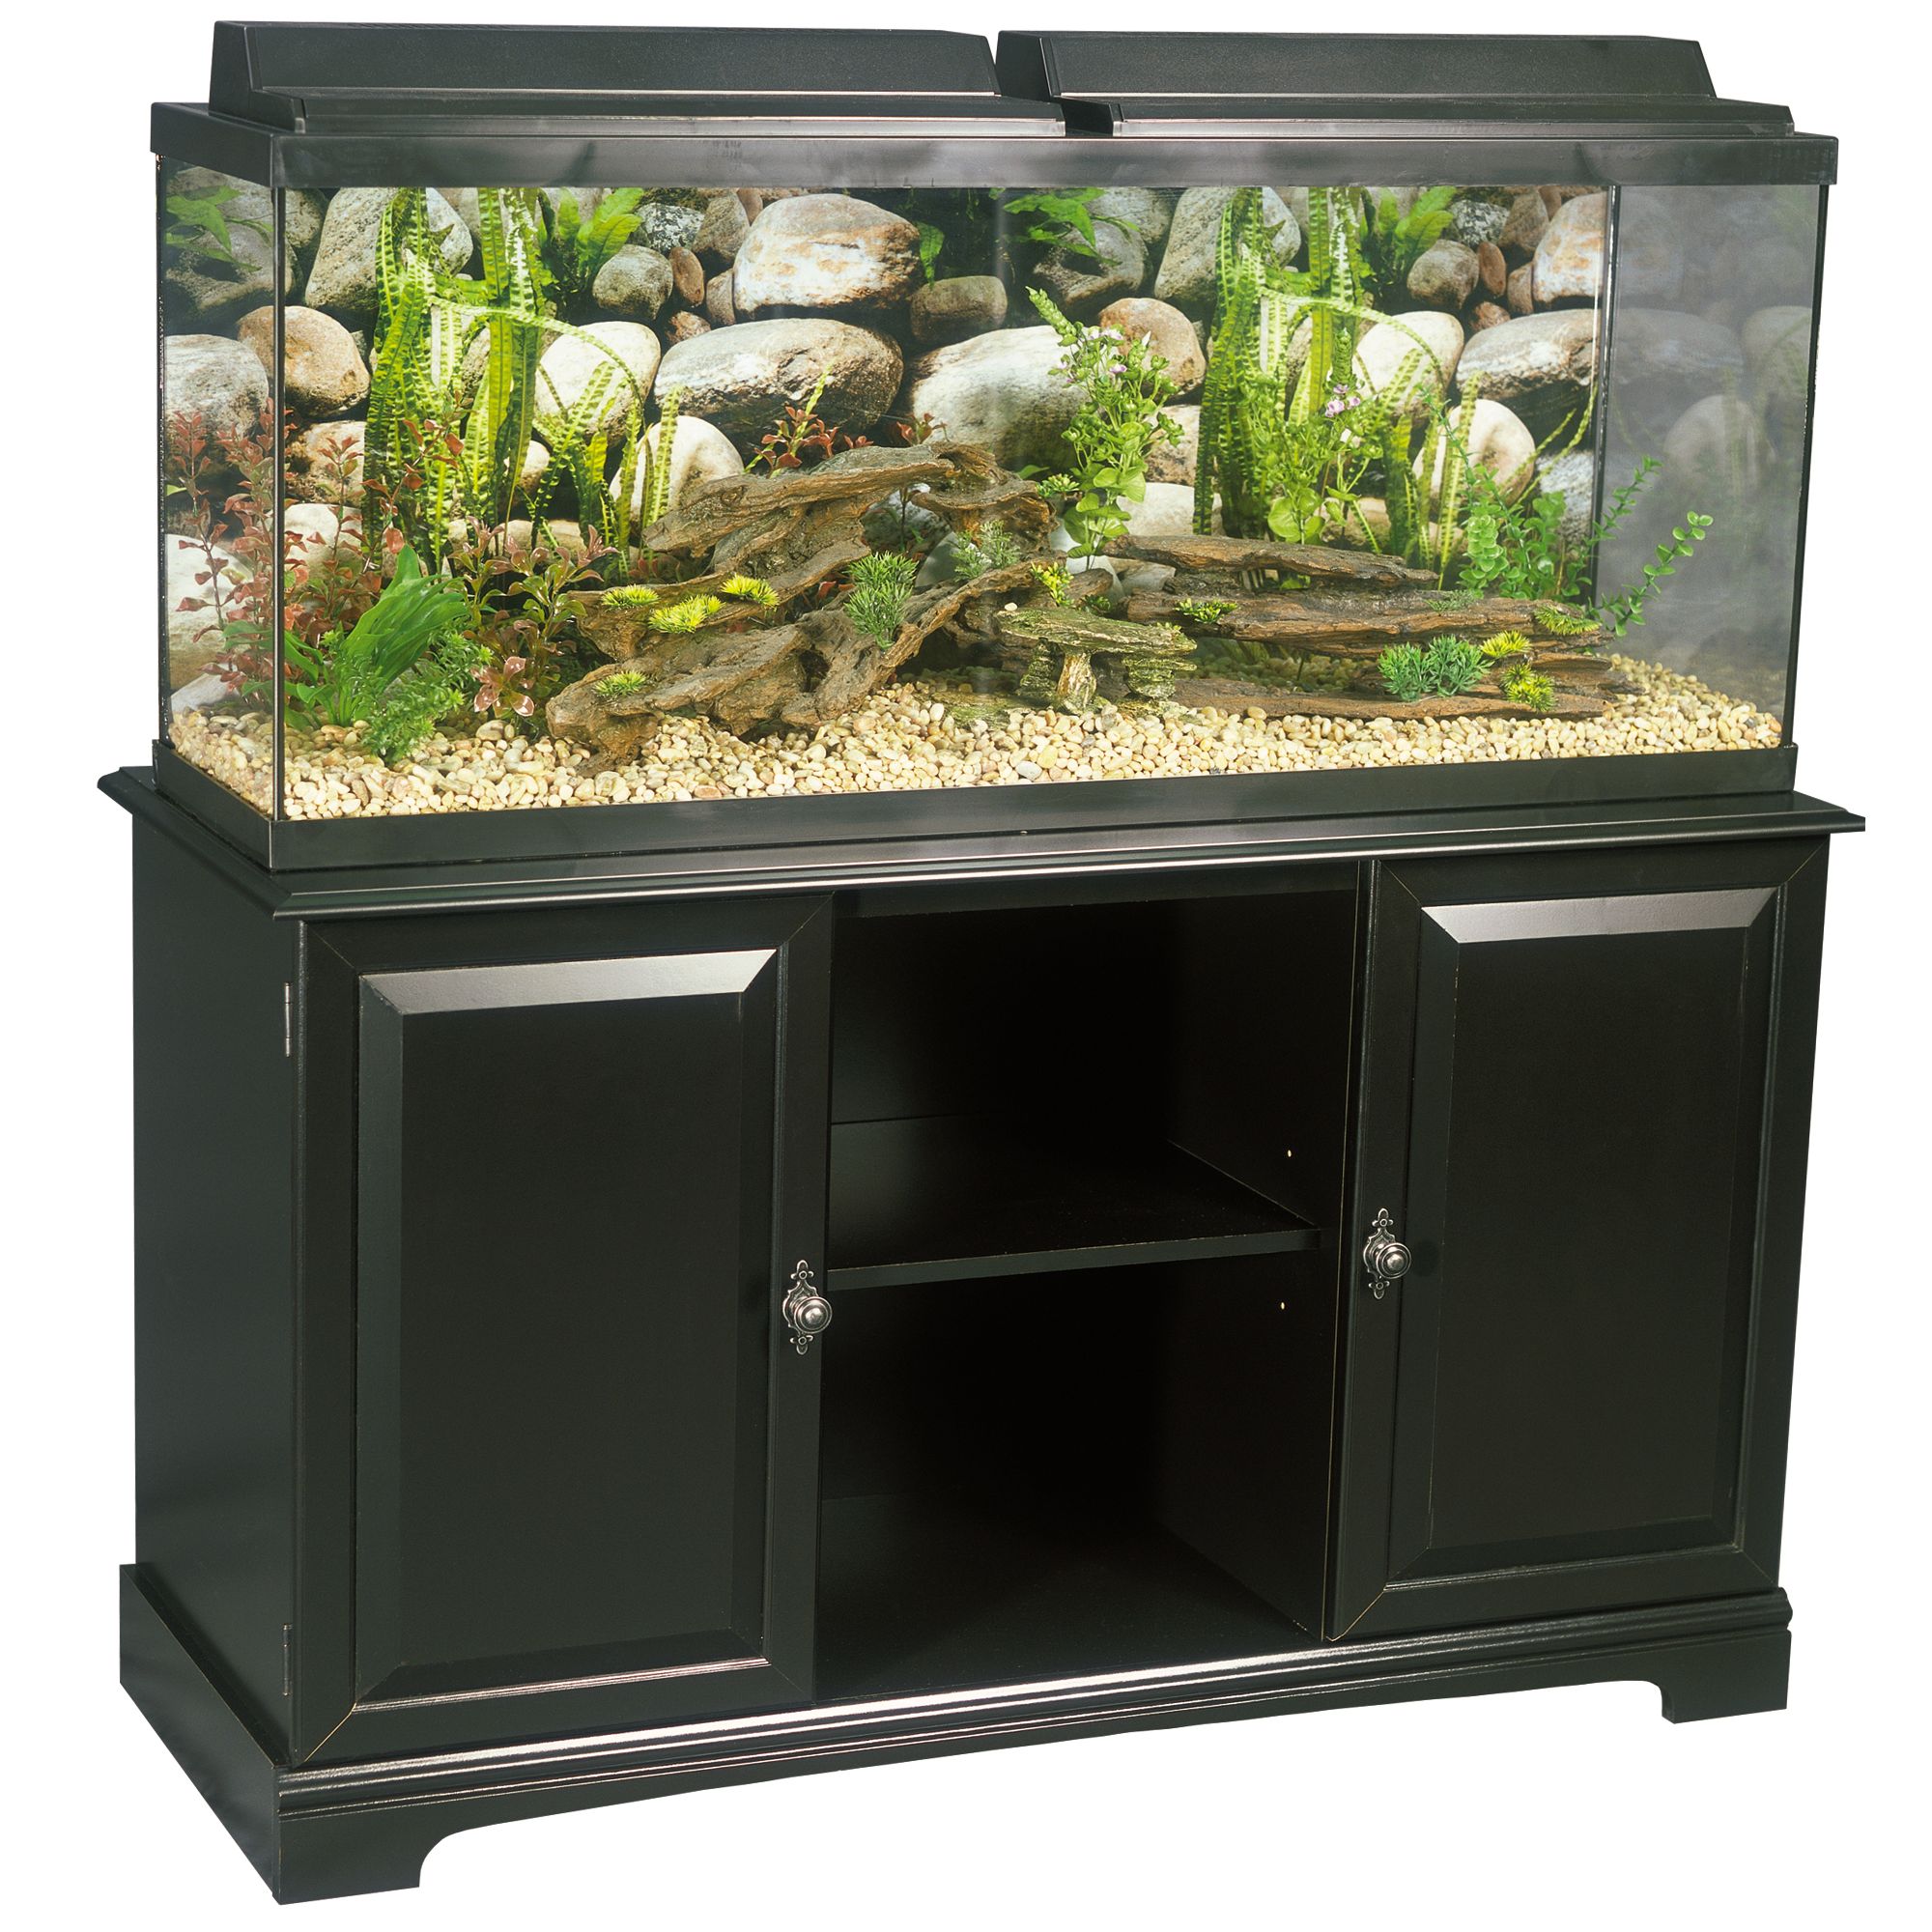 Le meilleur stand d'aquarium de 75 gallons - 5072245?$pDp PlaceholDer Desktop$